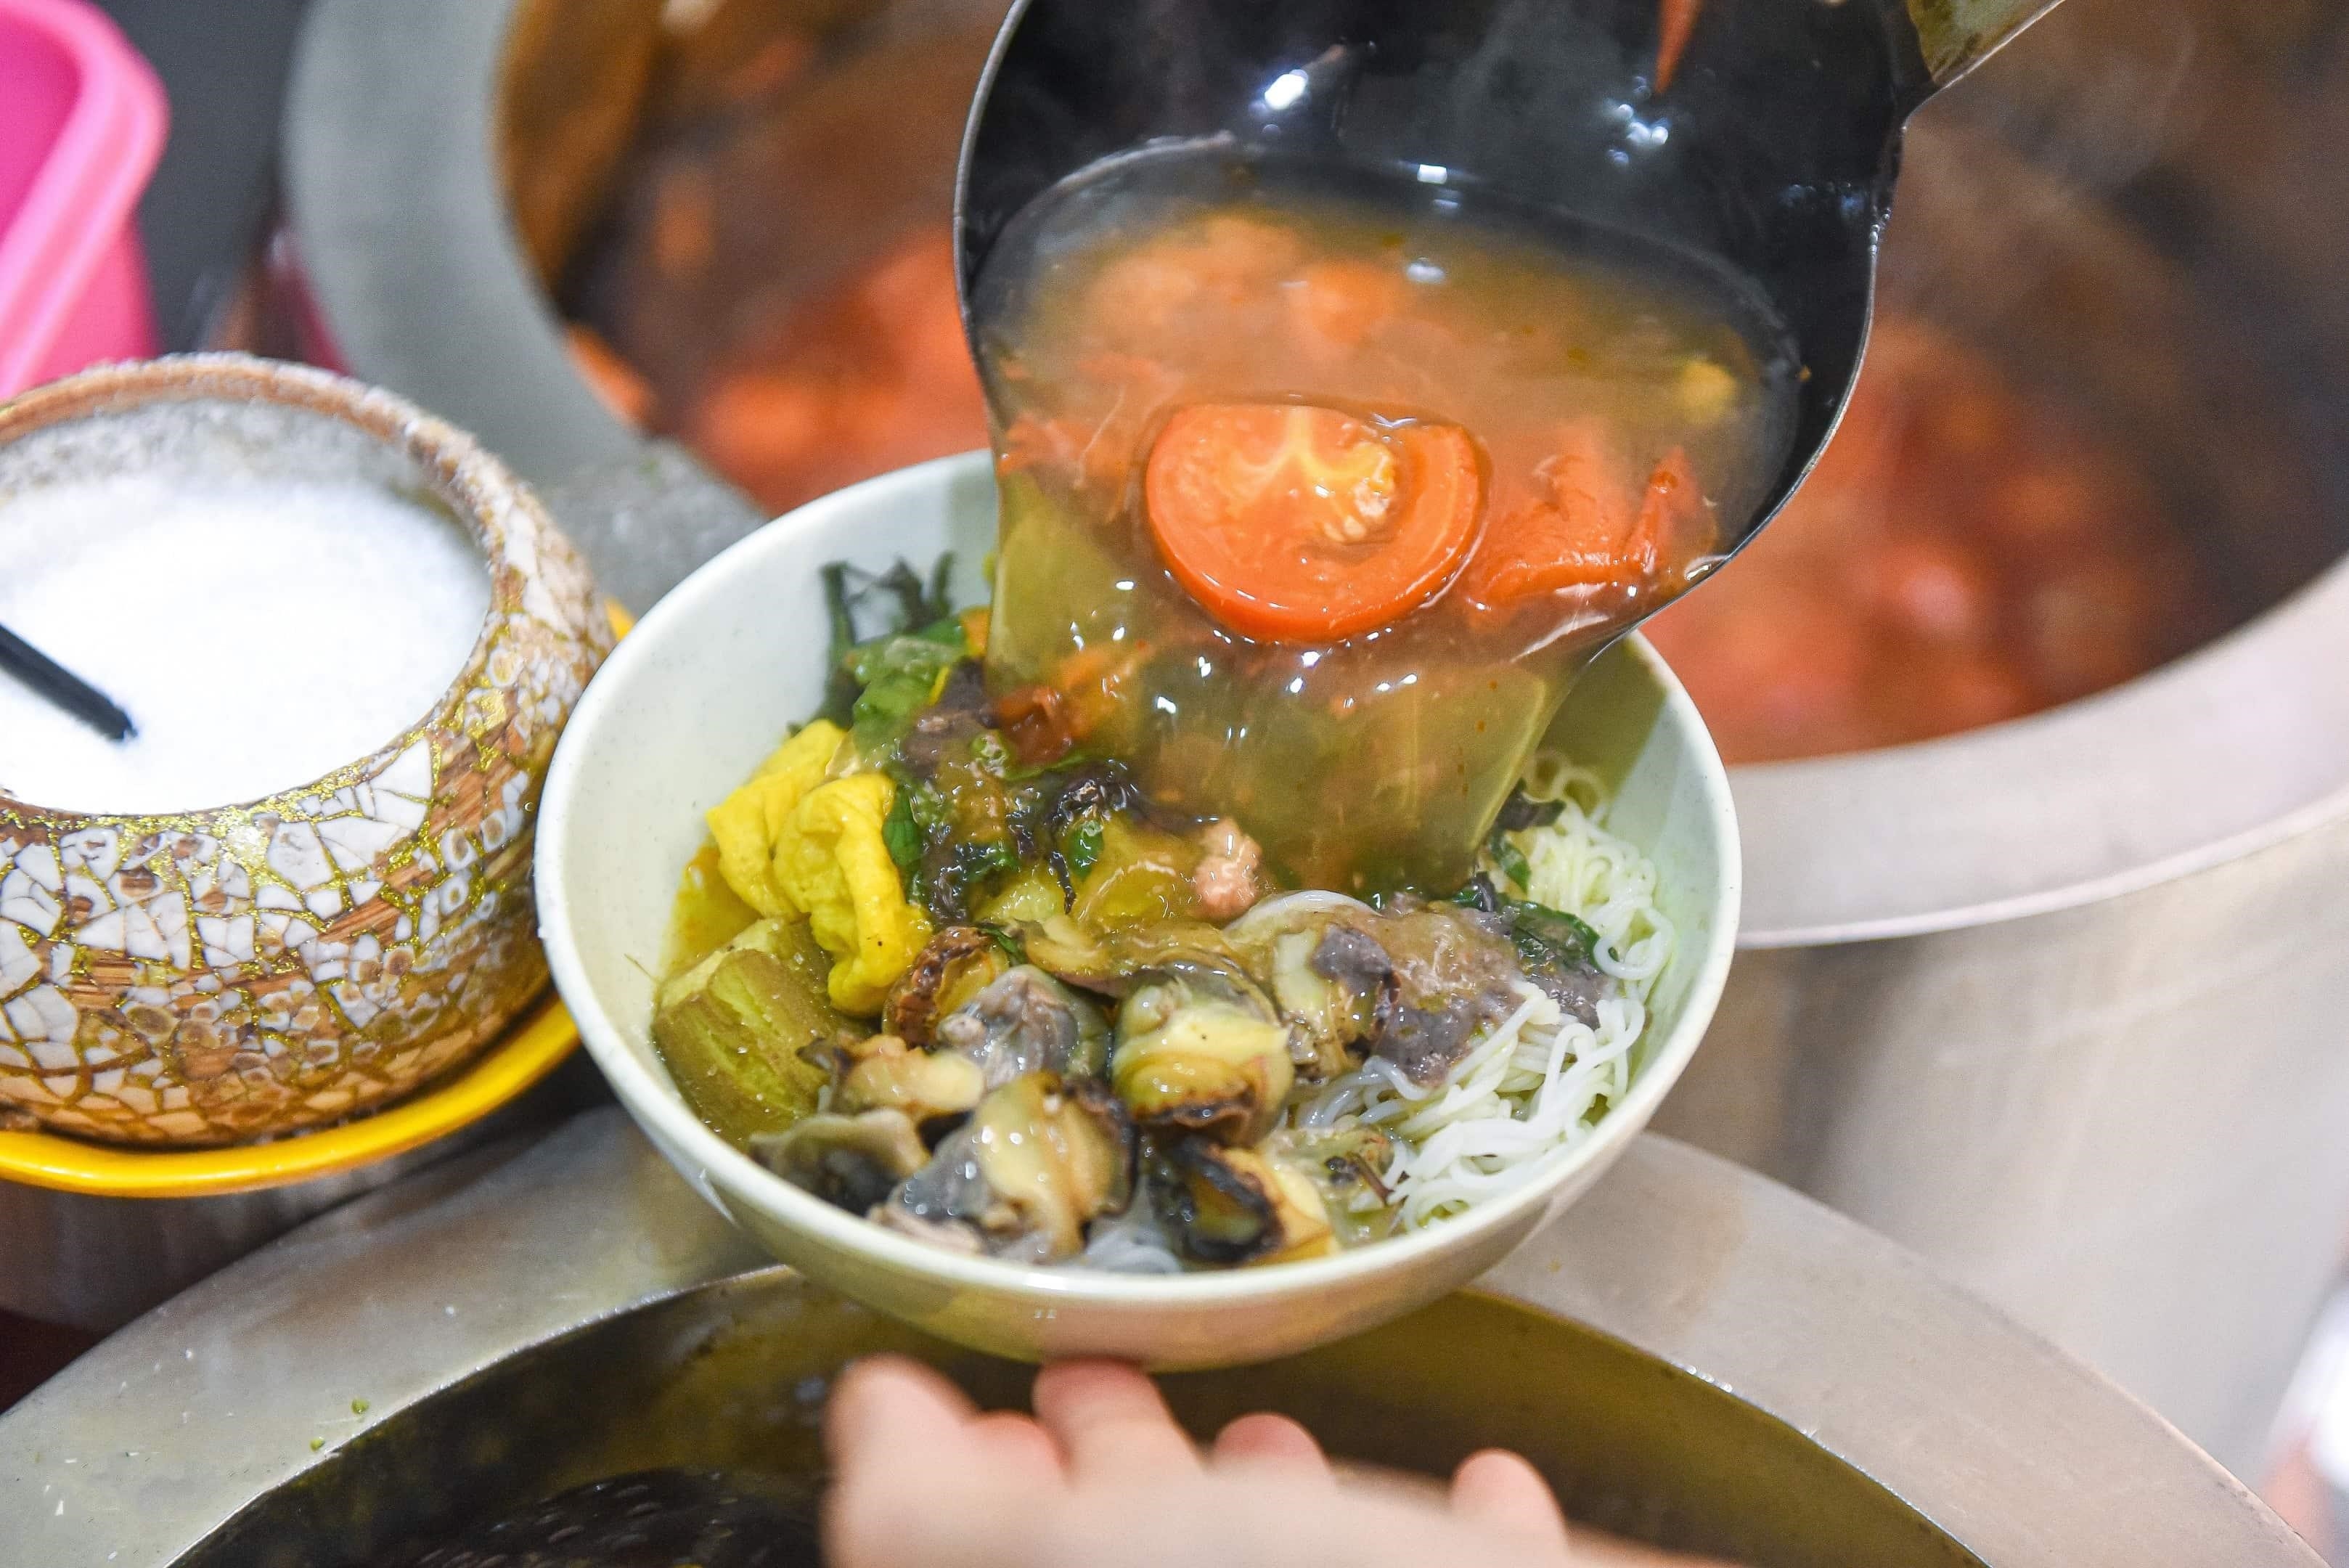 Bún ốc ngõ chợ Đồng Xuân là một món ăn truyền thống đặc sản của Hà Nội, nổi tiếng với hương vị đậm đà và độc đáo. Món ăn này thường được chế biến từ ốc tươi ngon và các loại gia vị thơm ngon, tạo nên một hương vị đặc trưng khó quên.